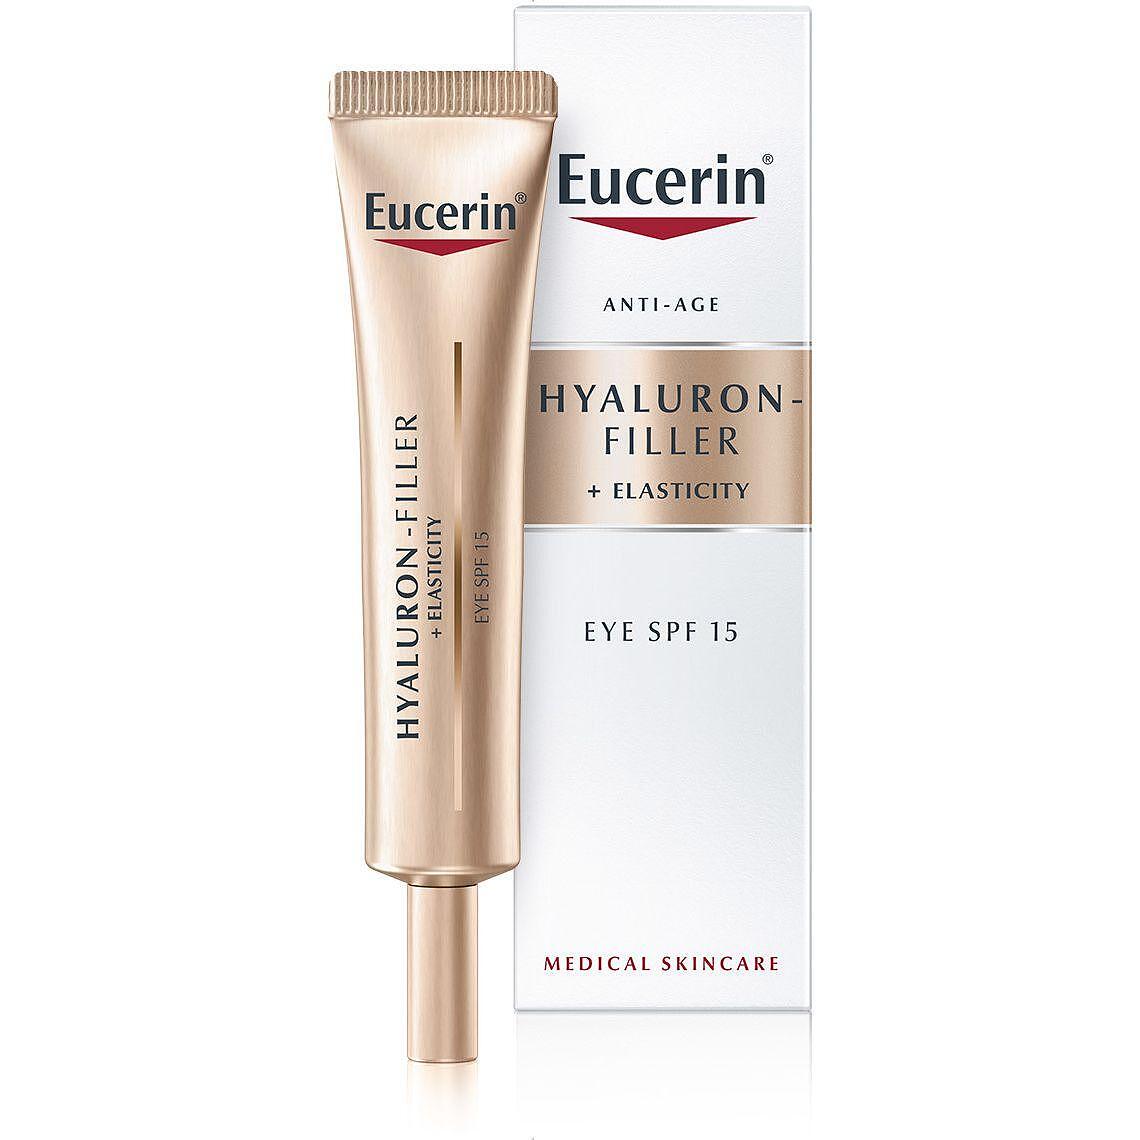 Eucerin Hyaluron-Filler + Elasticity околоочен крем, 15 мл | Еусерин